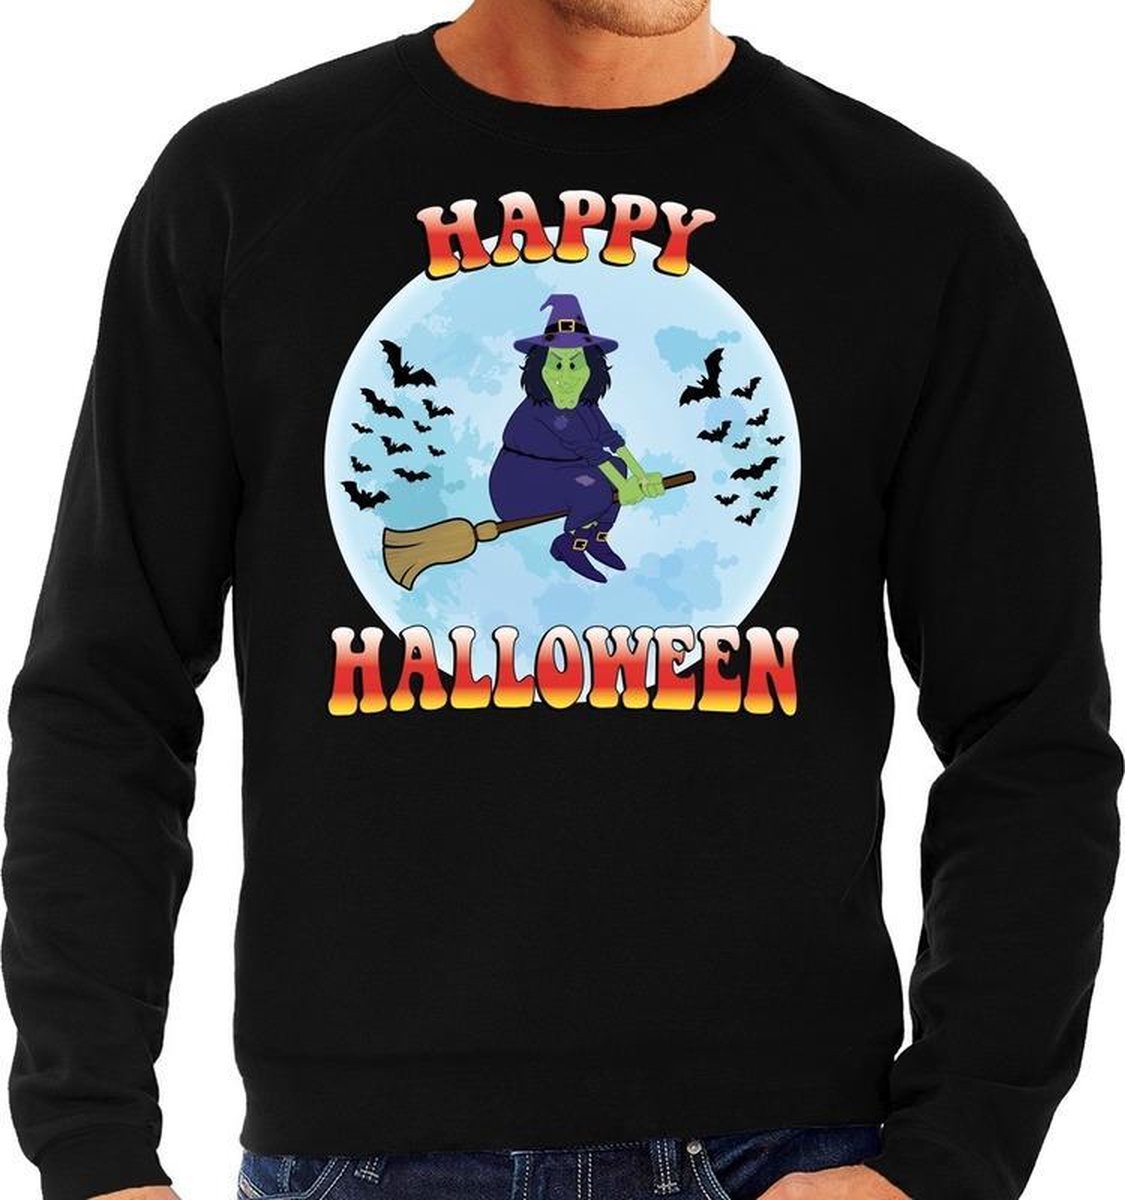 Halloween Happy Halloween heks verkleed sweater zwart voor heren - horror heks trui / kleding / kostuum S